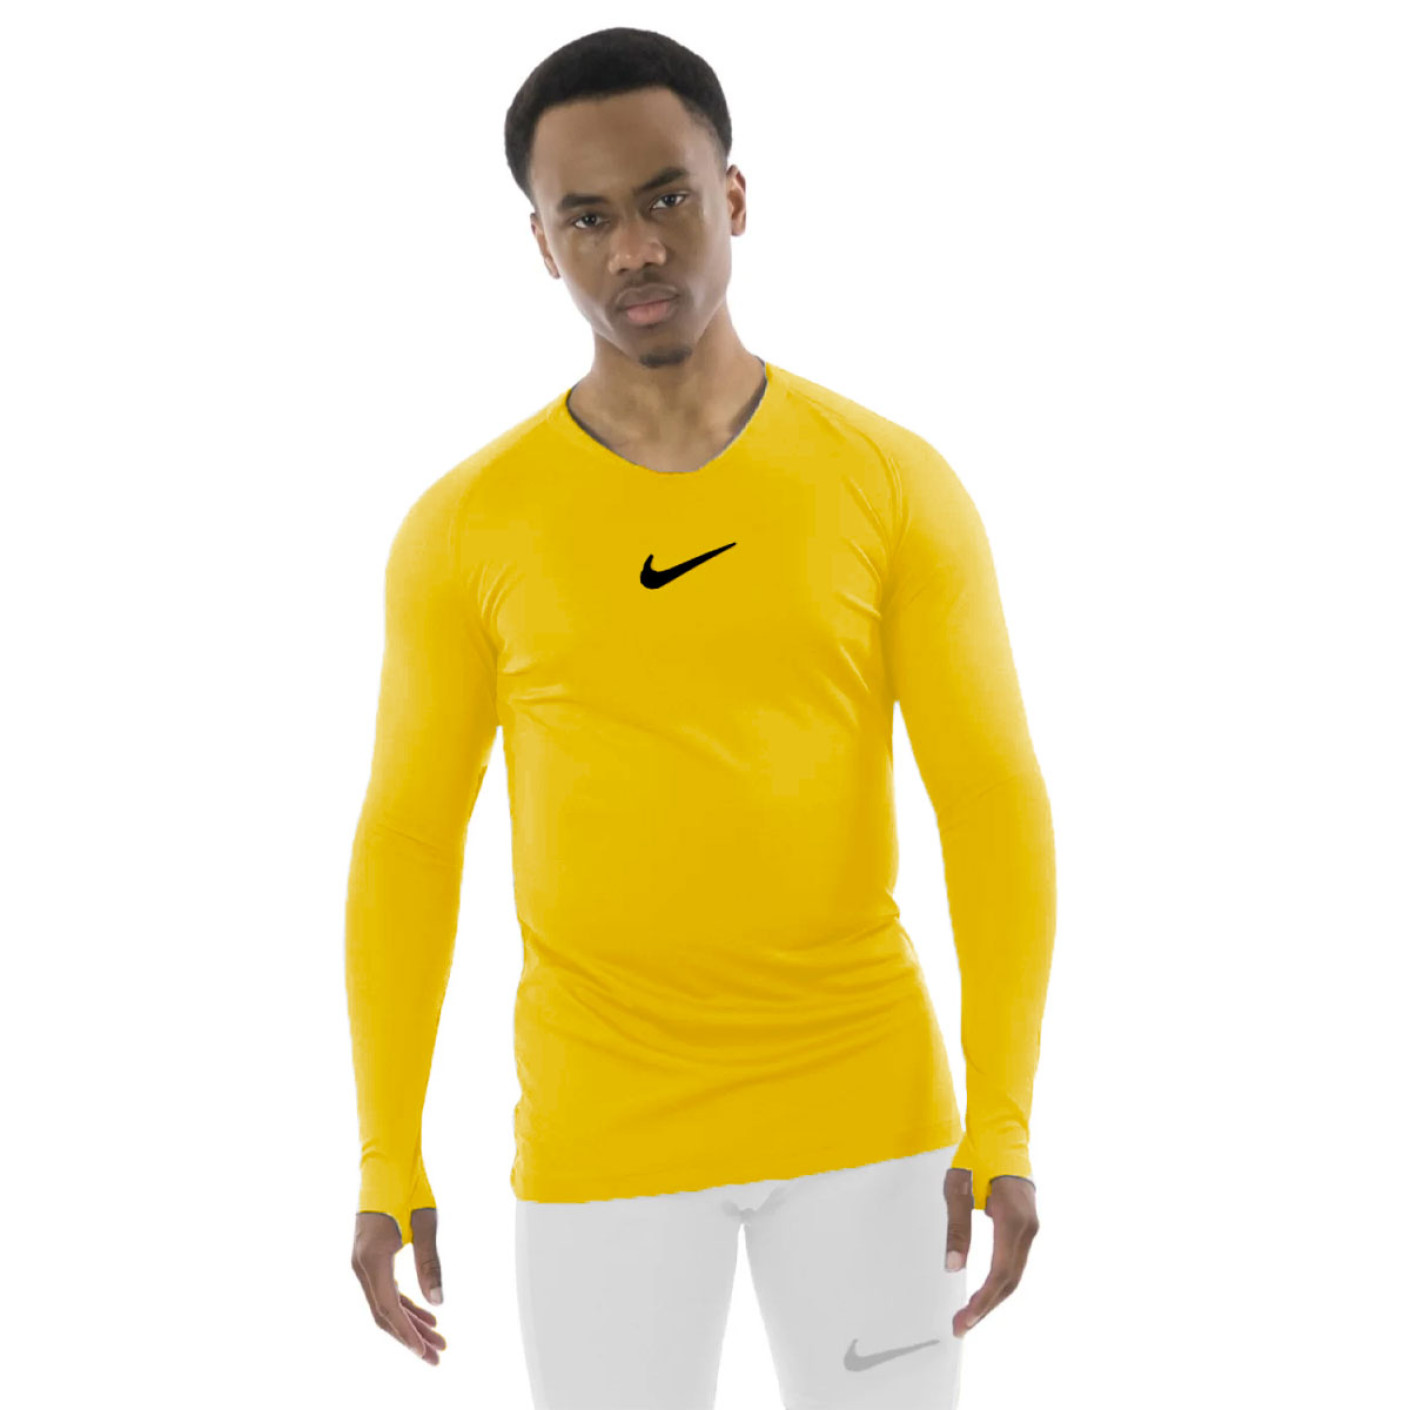 Nike Park Dri-Fit Ondershirt Lange Mouwen Geel Zwart